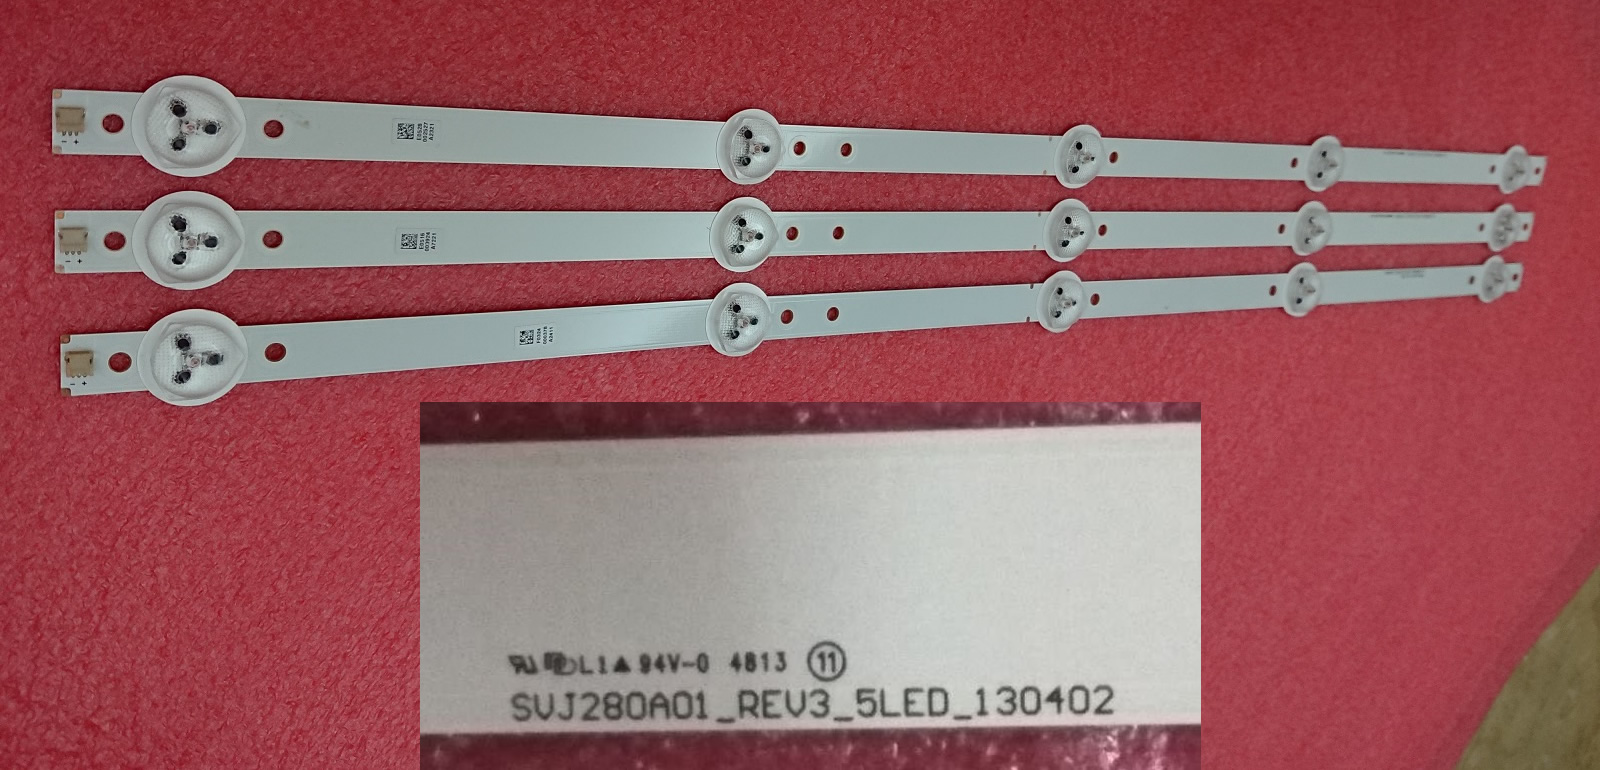 SVJ280A01_REV3_5LED_130402 5 leds 53cm 3pcs/set